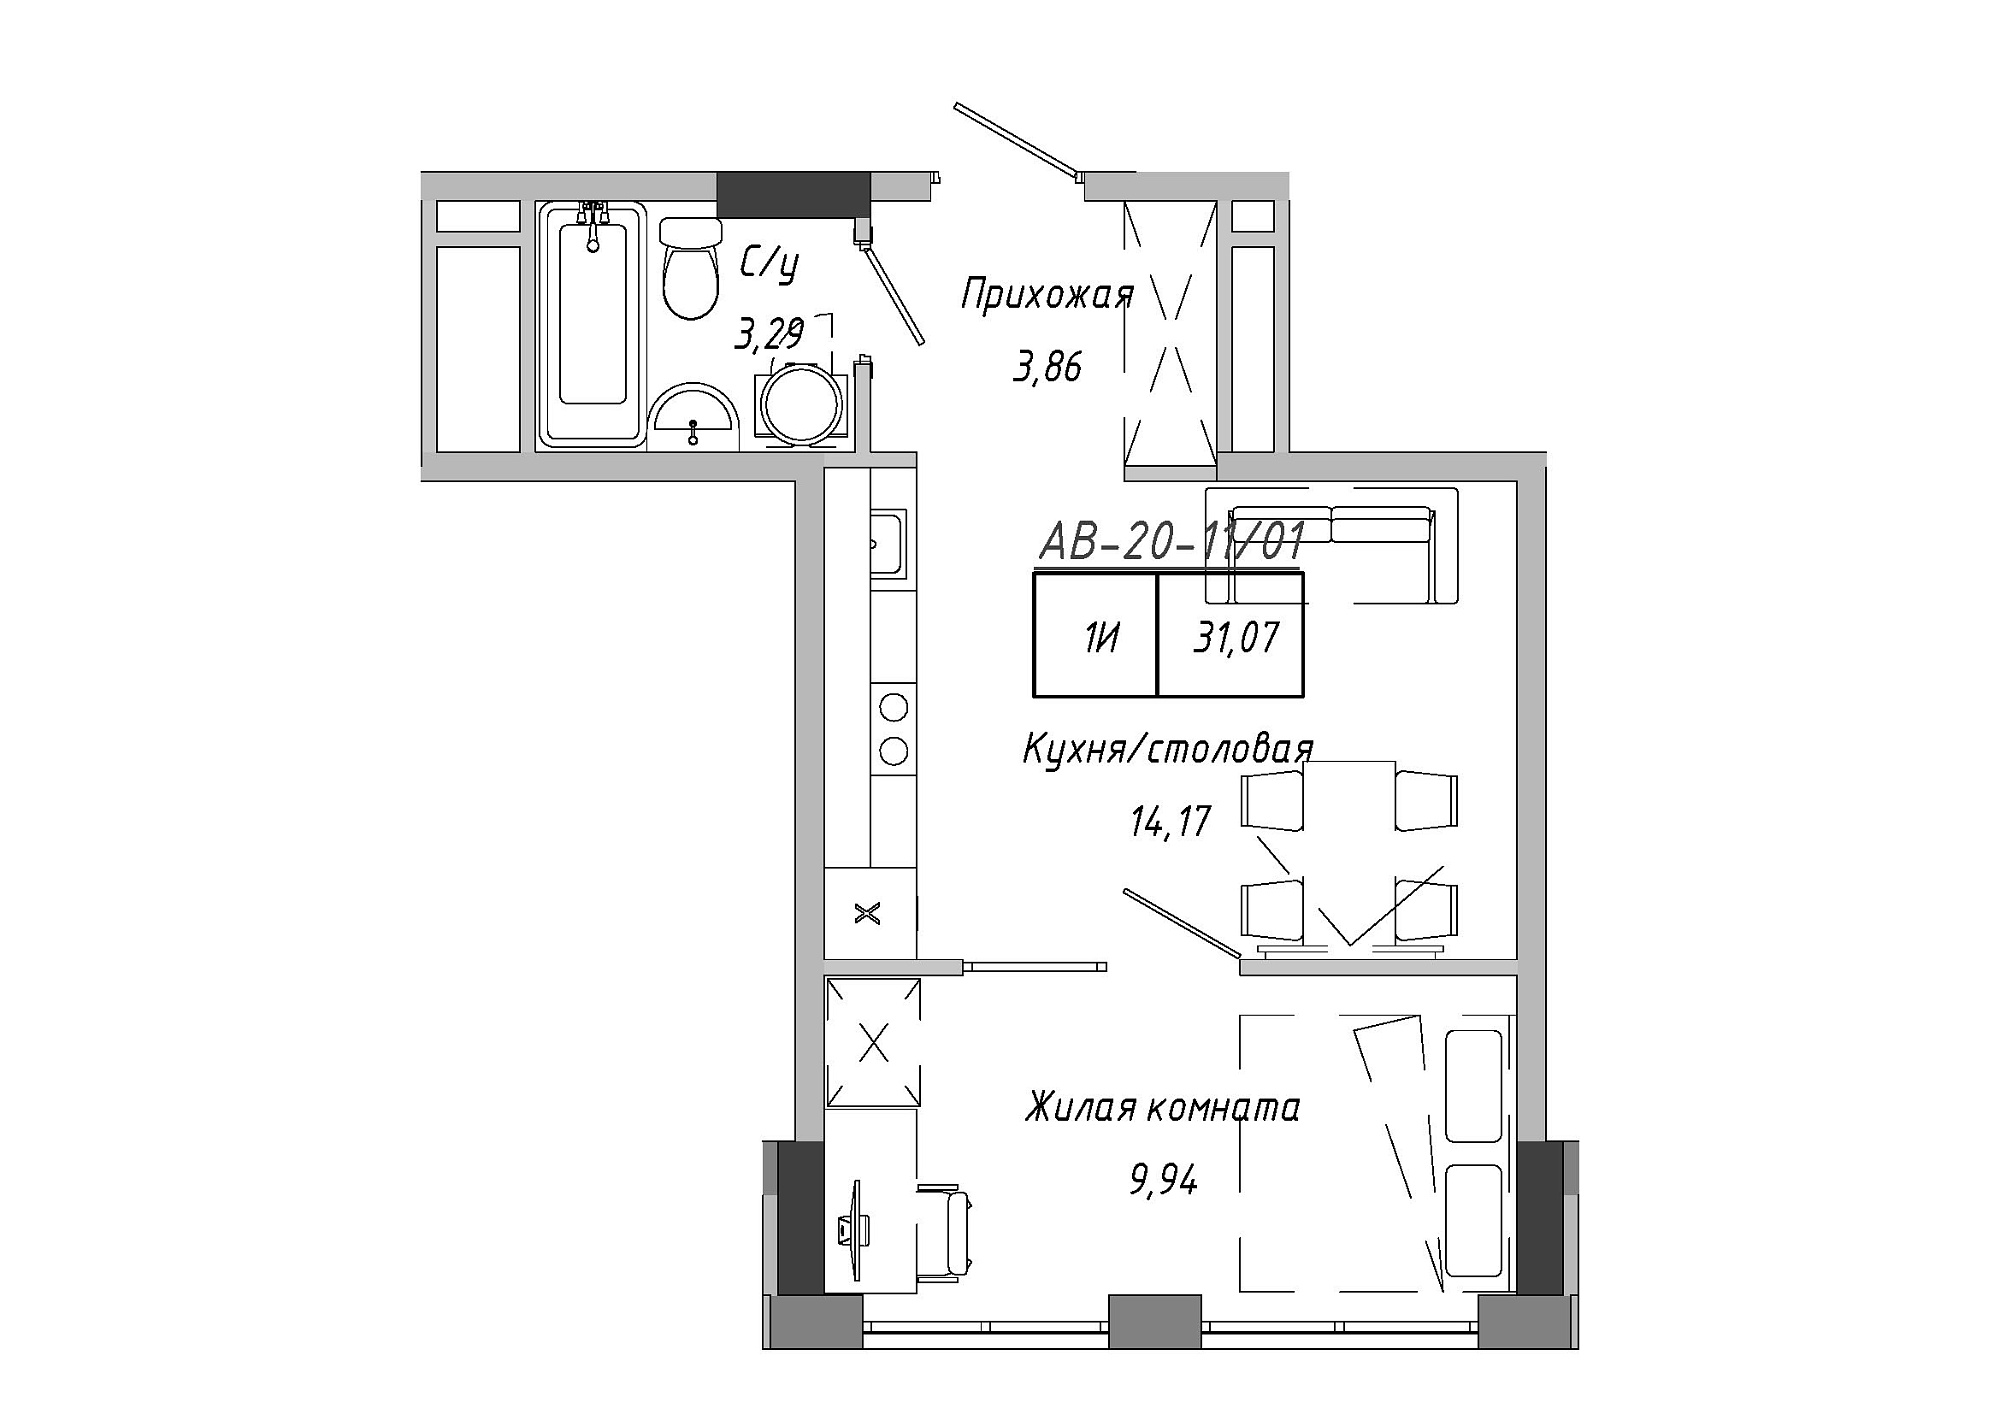 Планировка 1-к квартира площей 30.28м2, AB-20-11/00001.